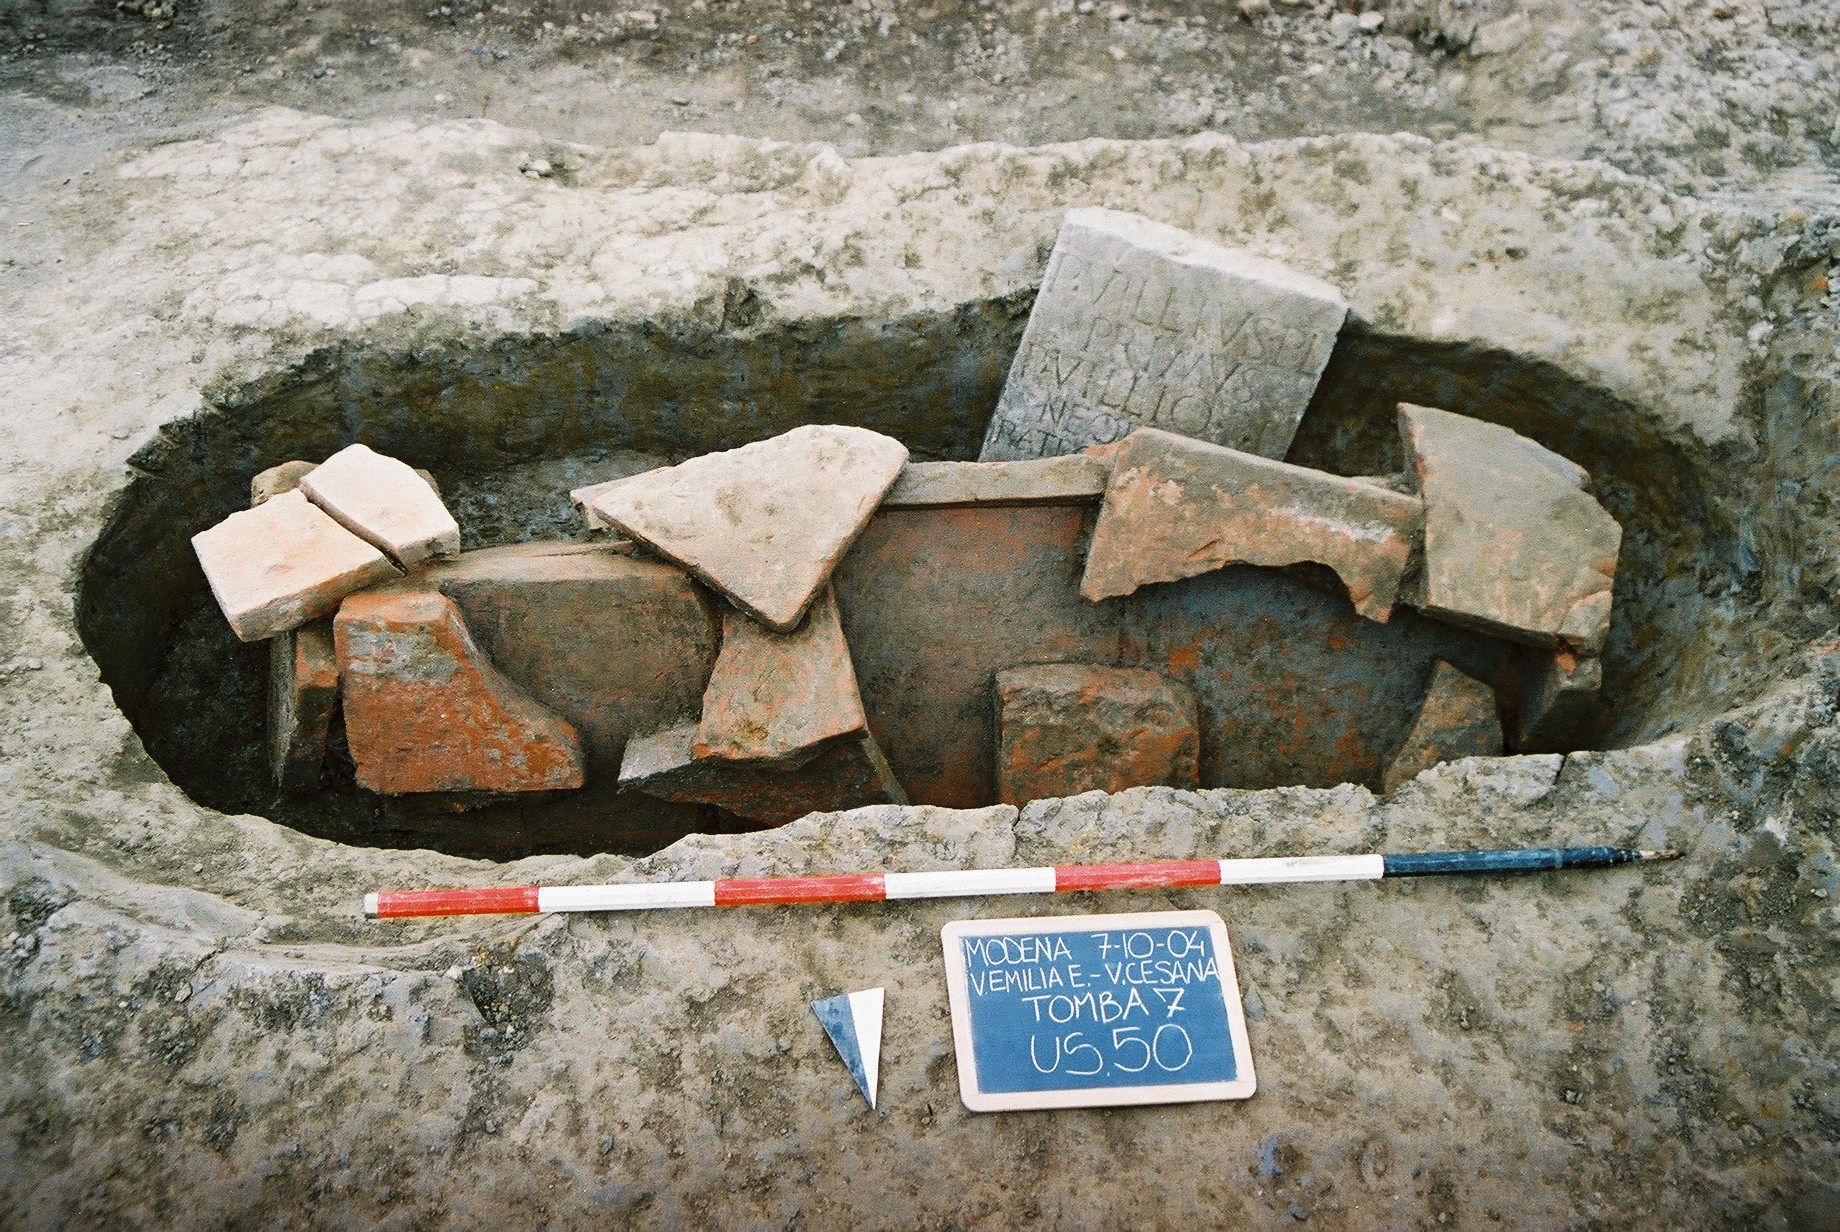 Gli scavi in via Emilia Est, via Cesana